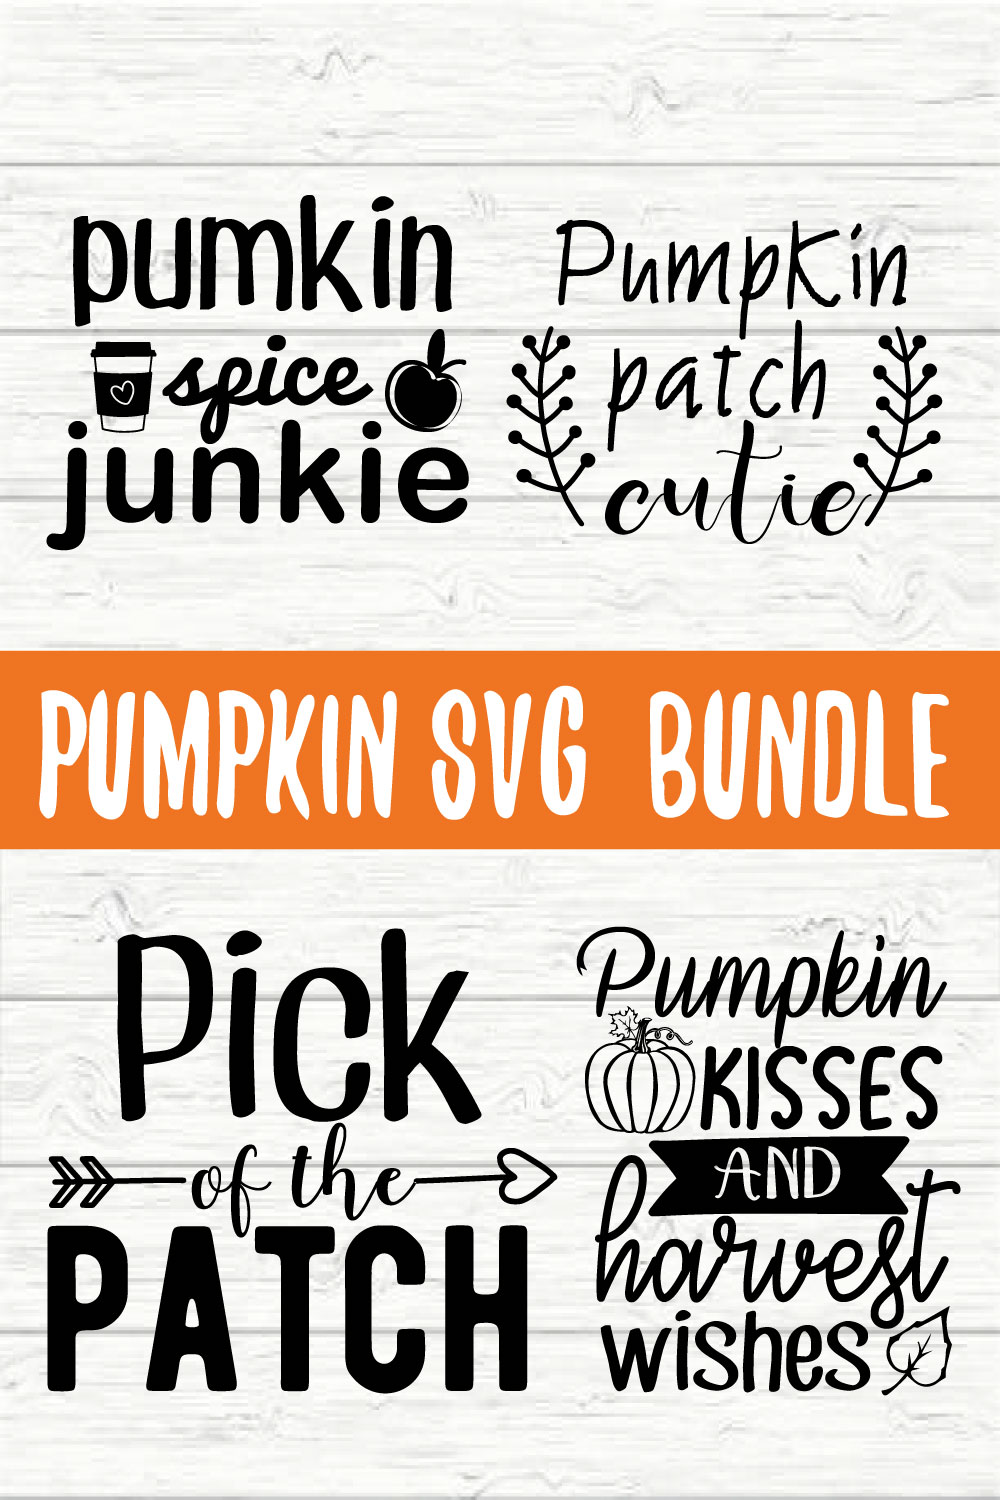 Pumpkin Design Bundle vol 4 pinterest preview image.